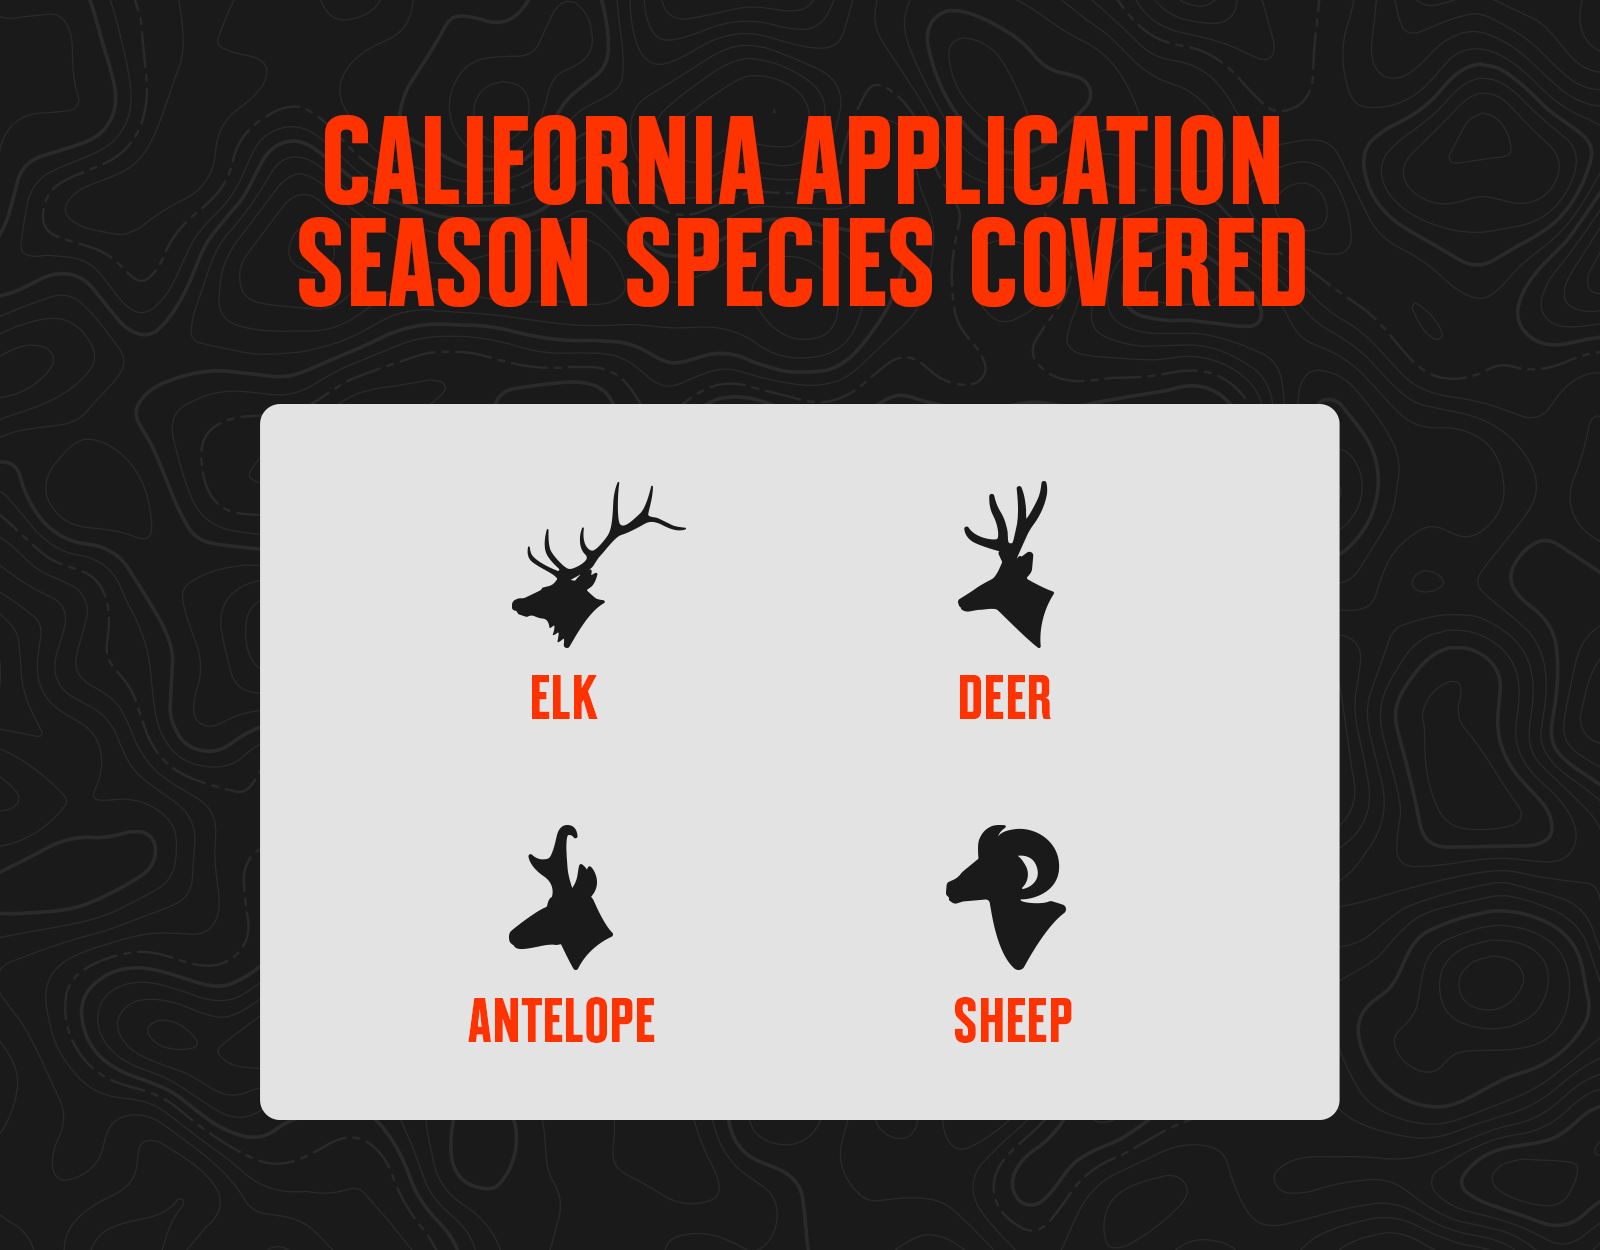 California application season species, including elk, deer, antelope, and sheep. 